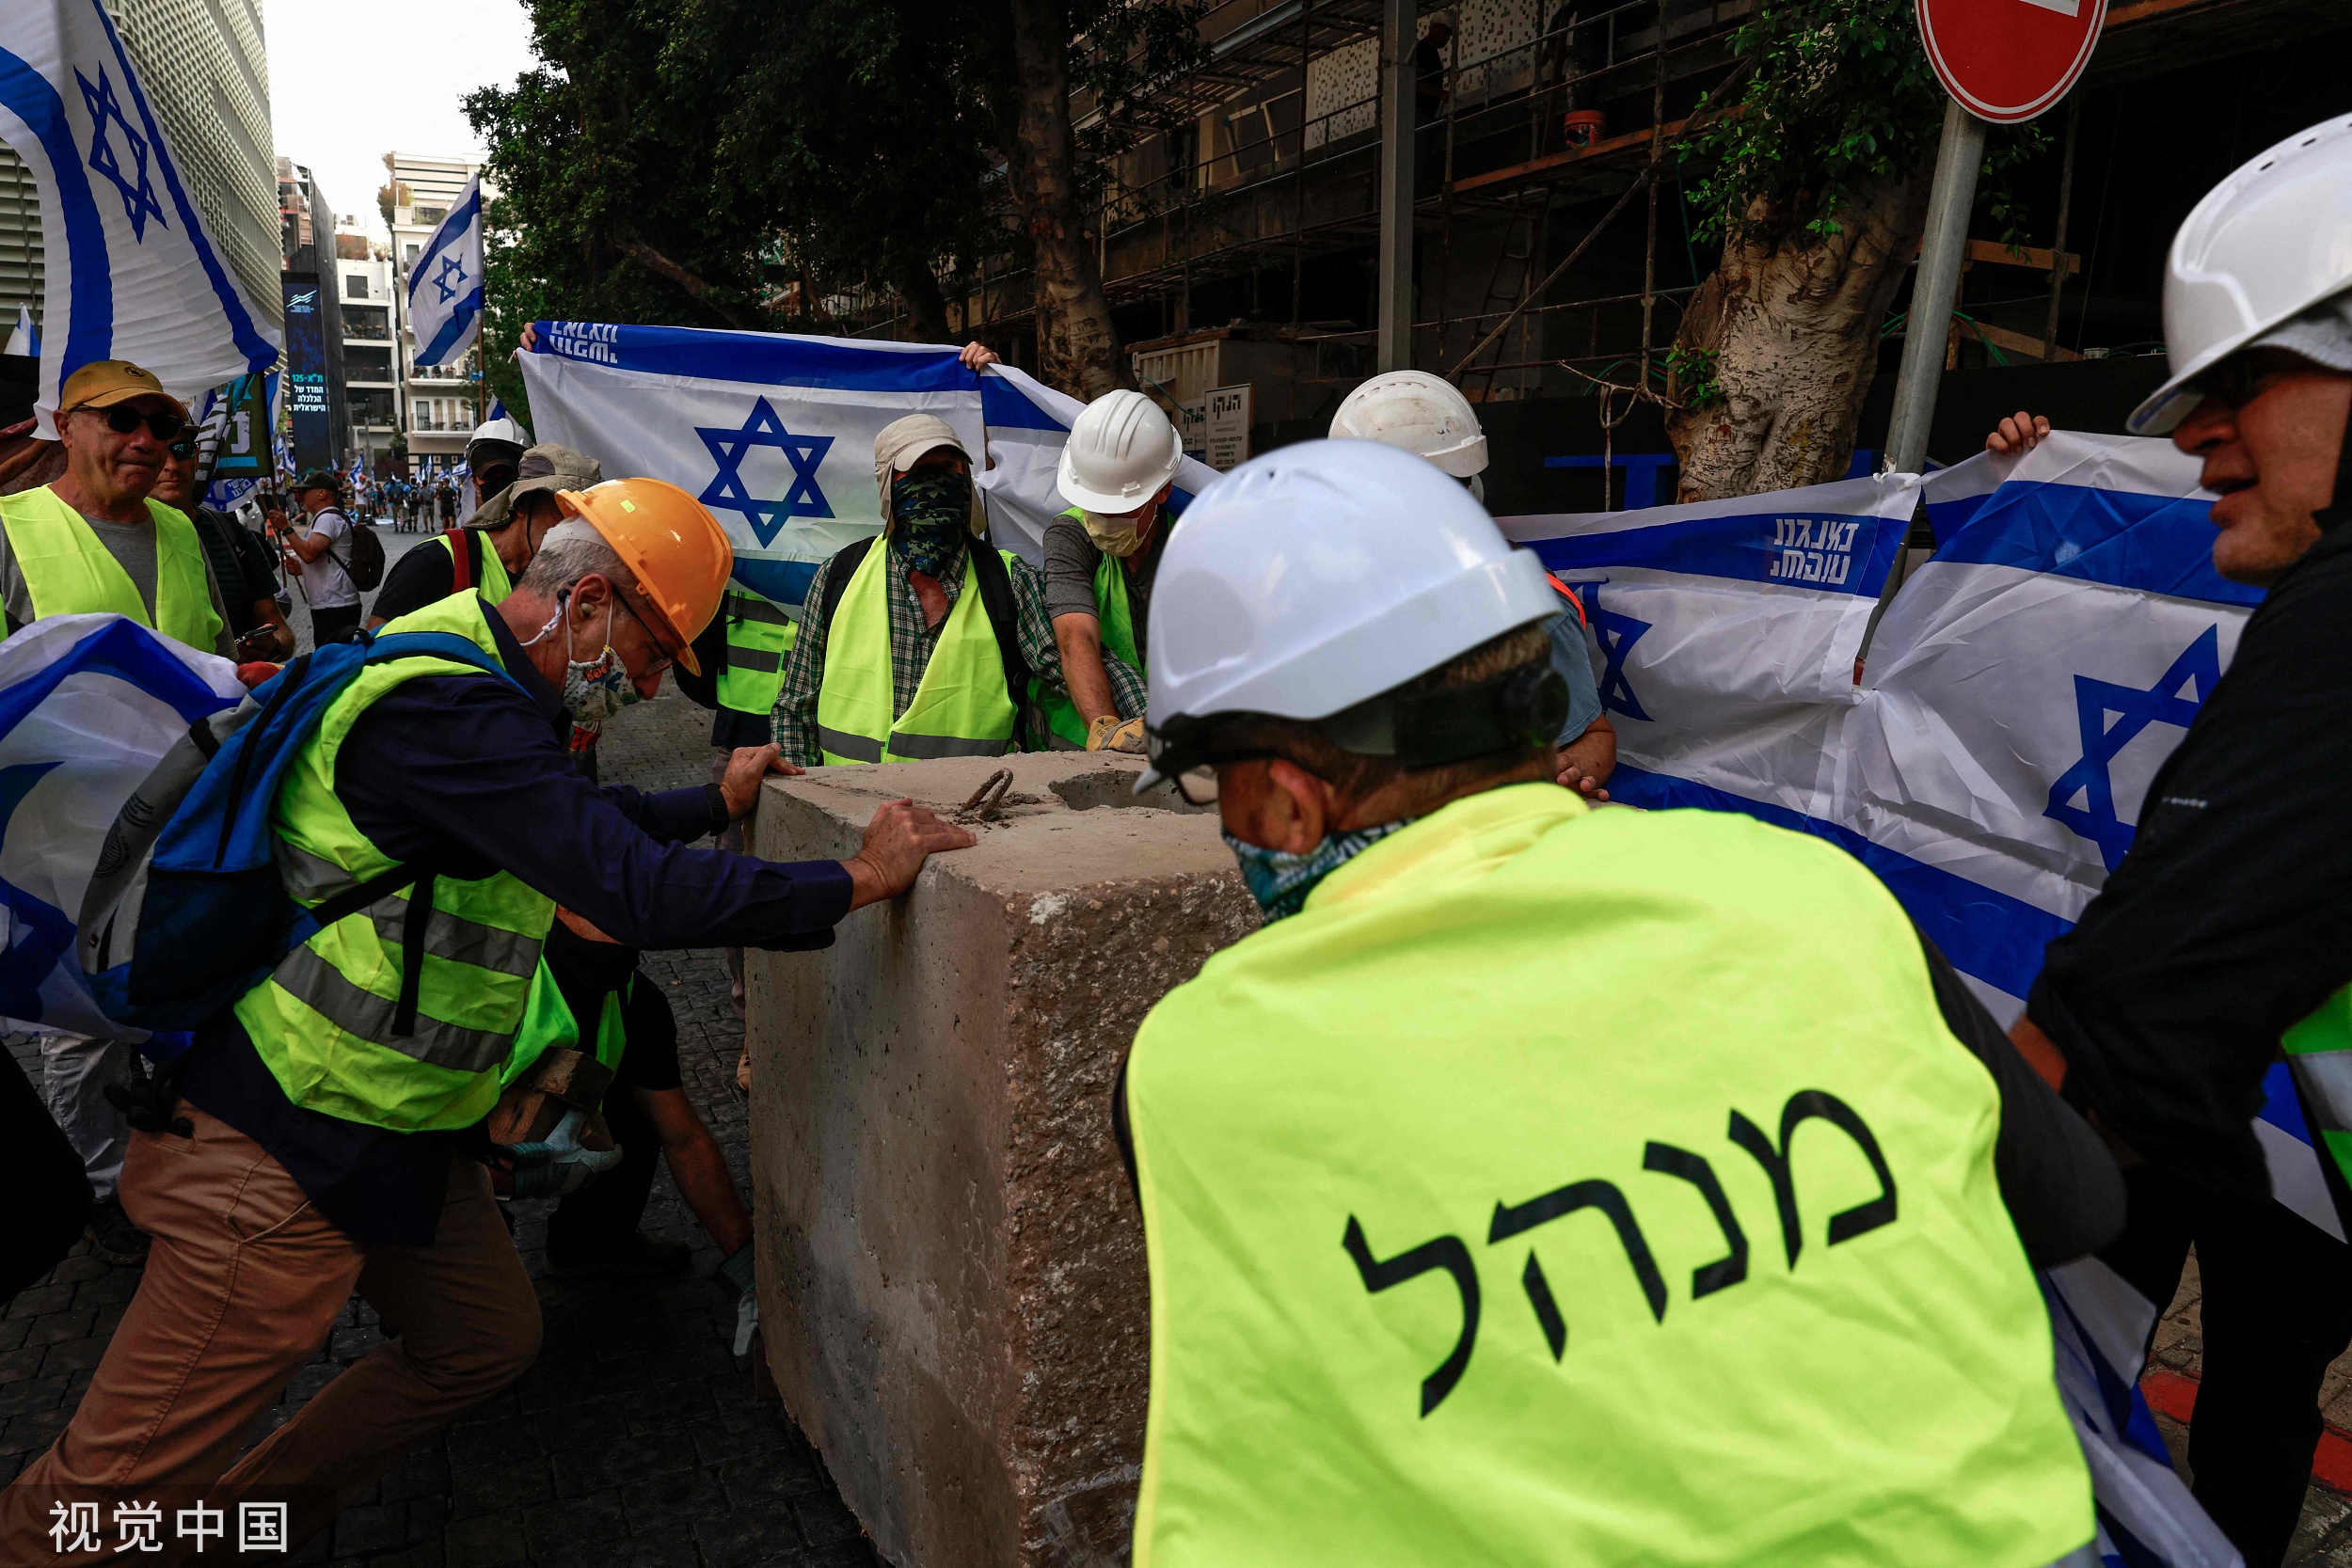 以色列抗议者 编辑类库存图片. 图片 包括有 信息, 民主, 过帐, 标志, 消息, 入侵, 冲突, 示威者 - 243781579